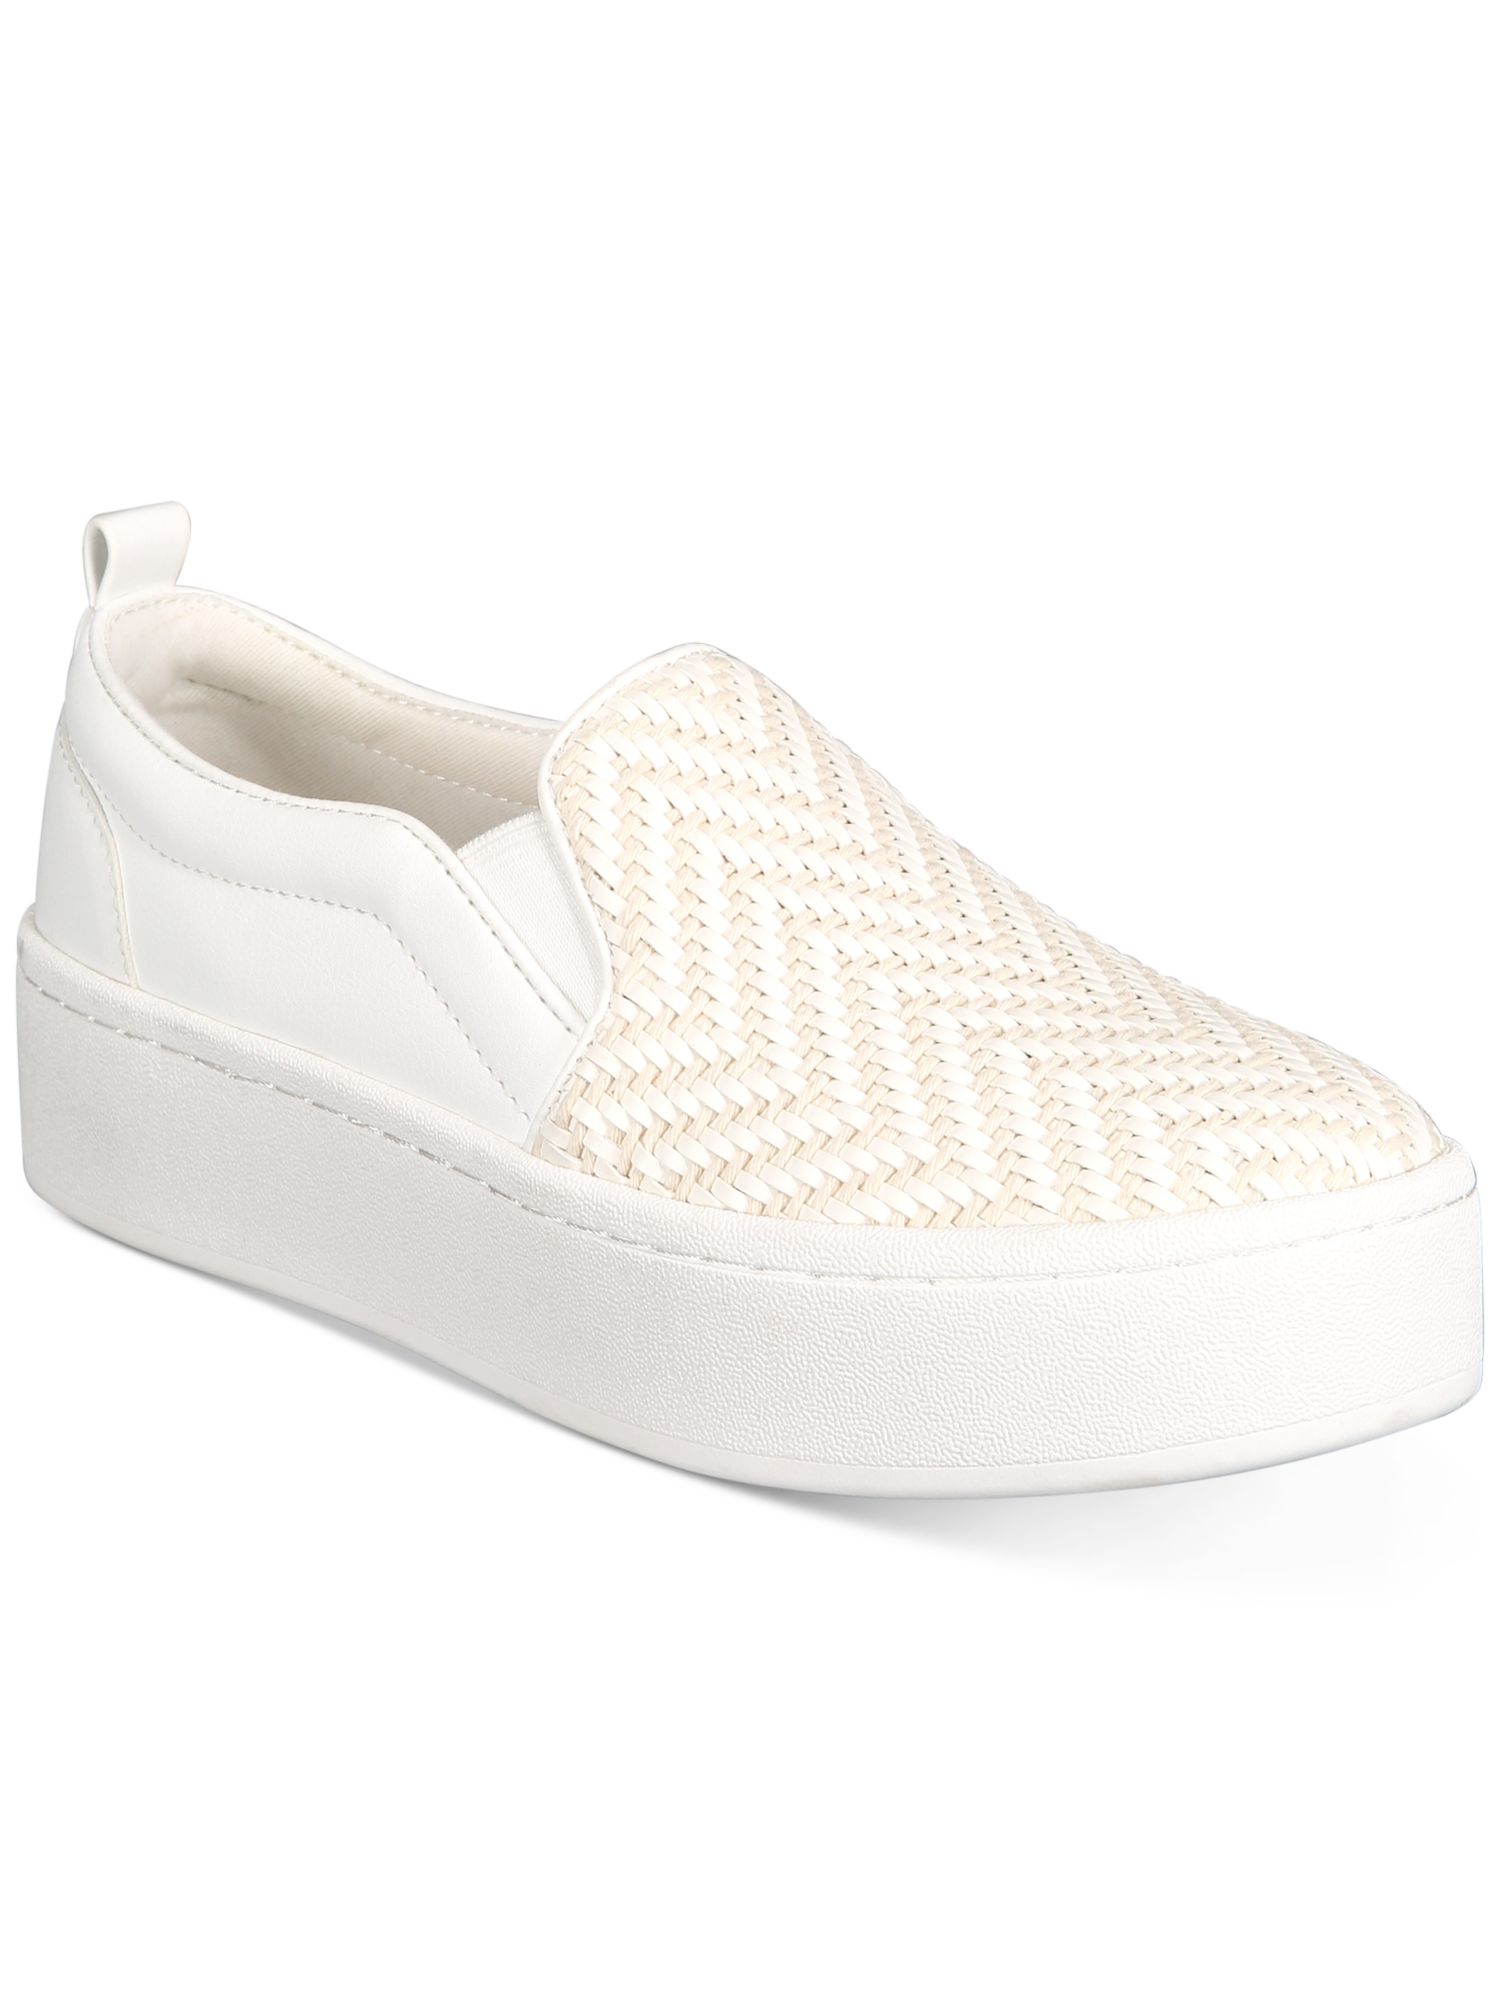 ALDO Womens White Goring Woven Comfort Alarka Round Toe Platform Slip On Sneakers 10 B